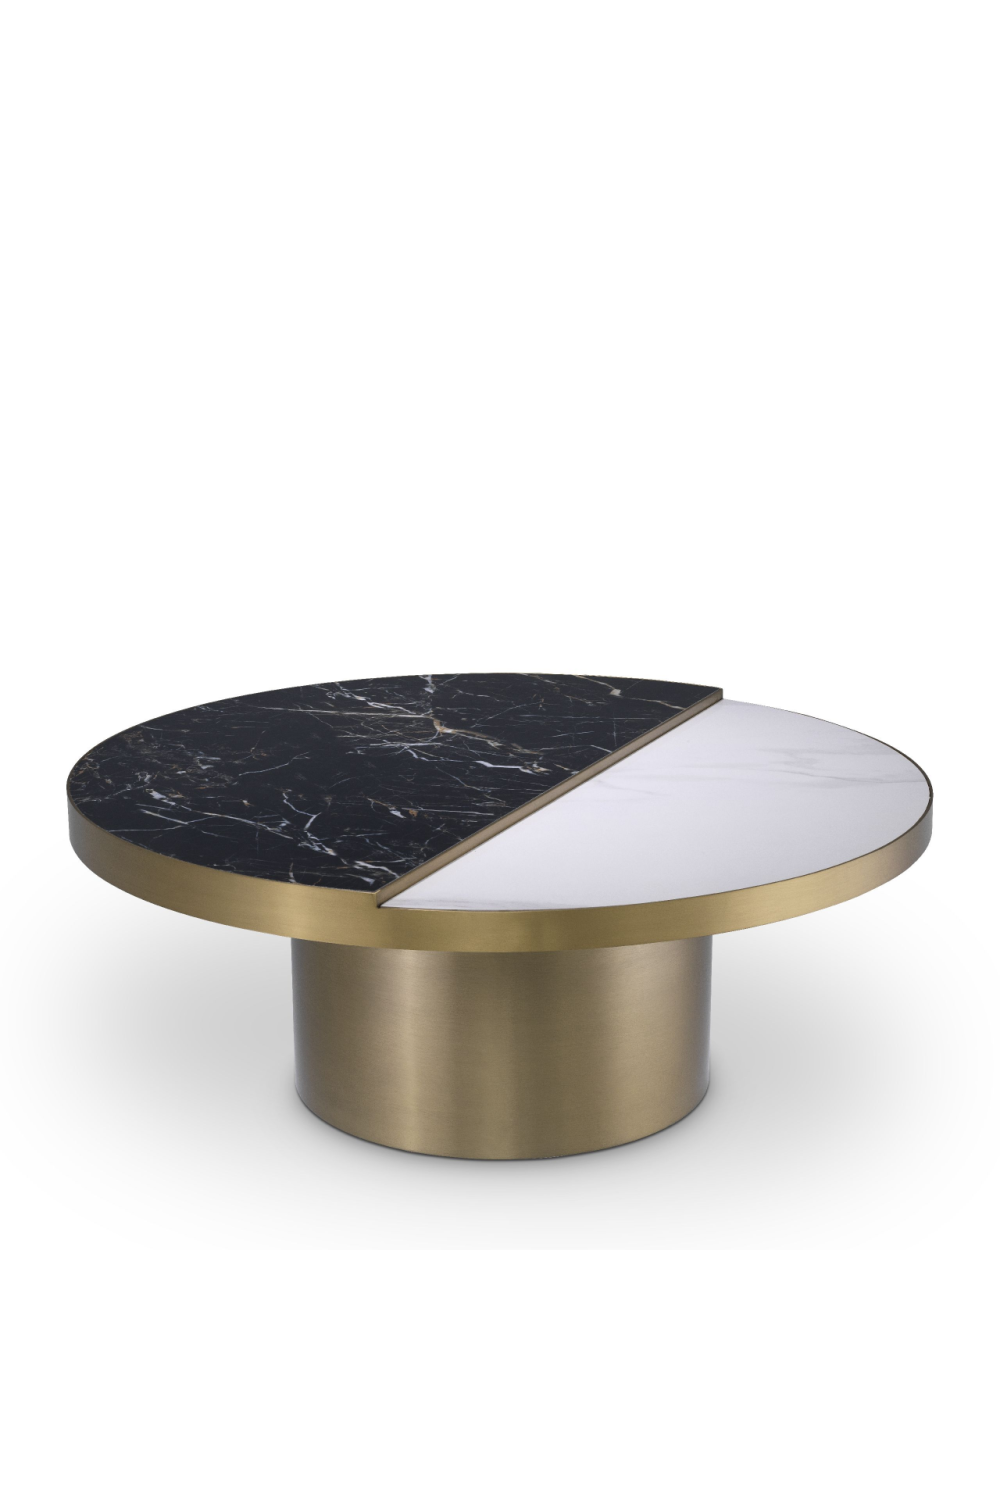 Round Brass Ceramic Coffee Table | Eichholtz Excelsior | #1 Eichholtz Retailer